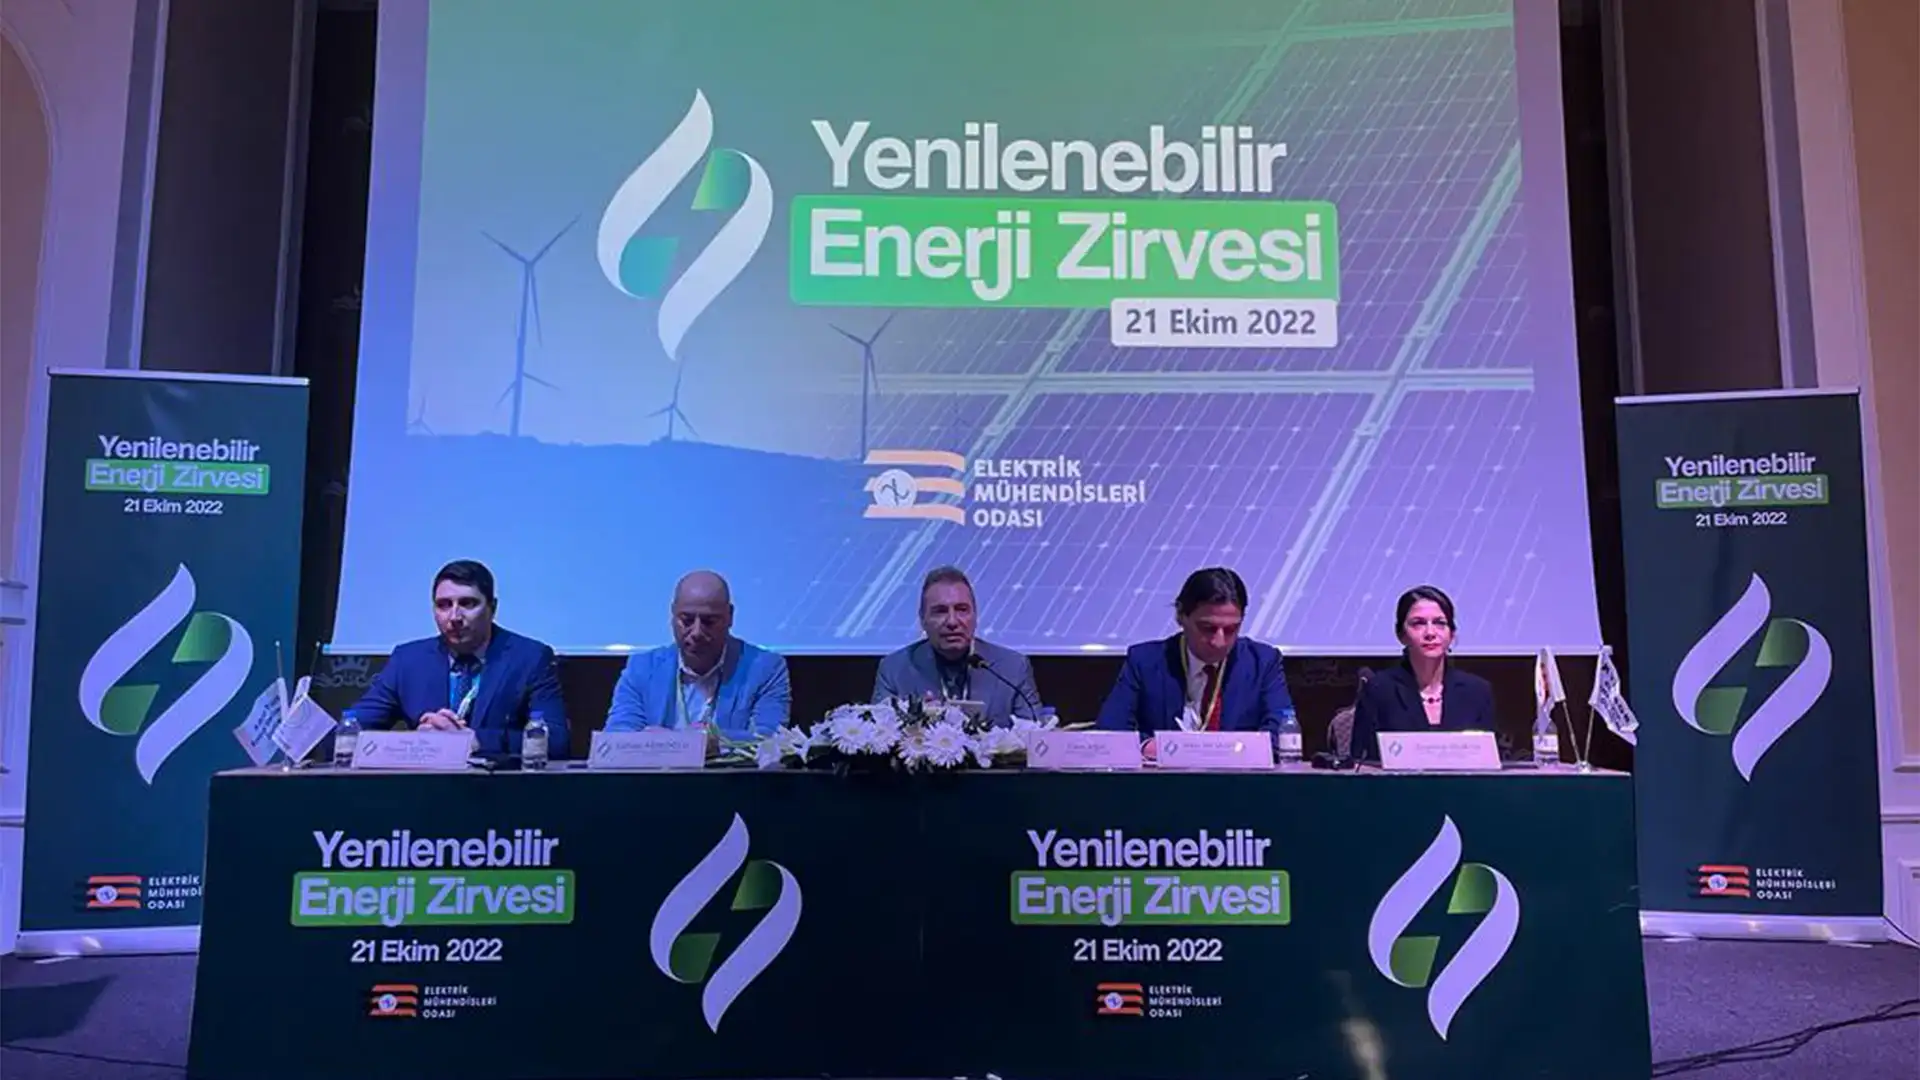 Kıbrıs EMO Organizasyonu "Yenilenebilir Enerji Zirvesi"